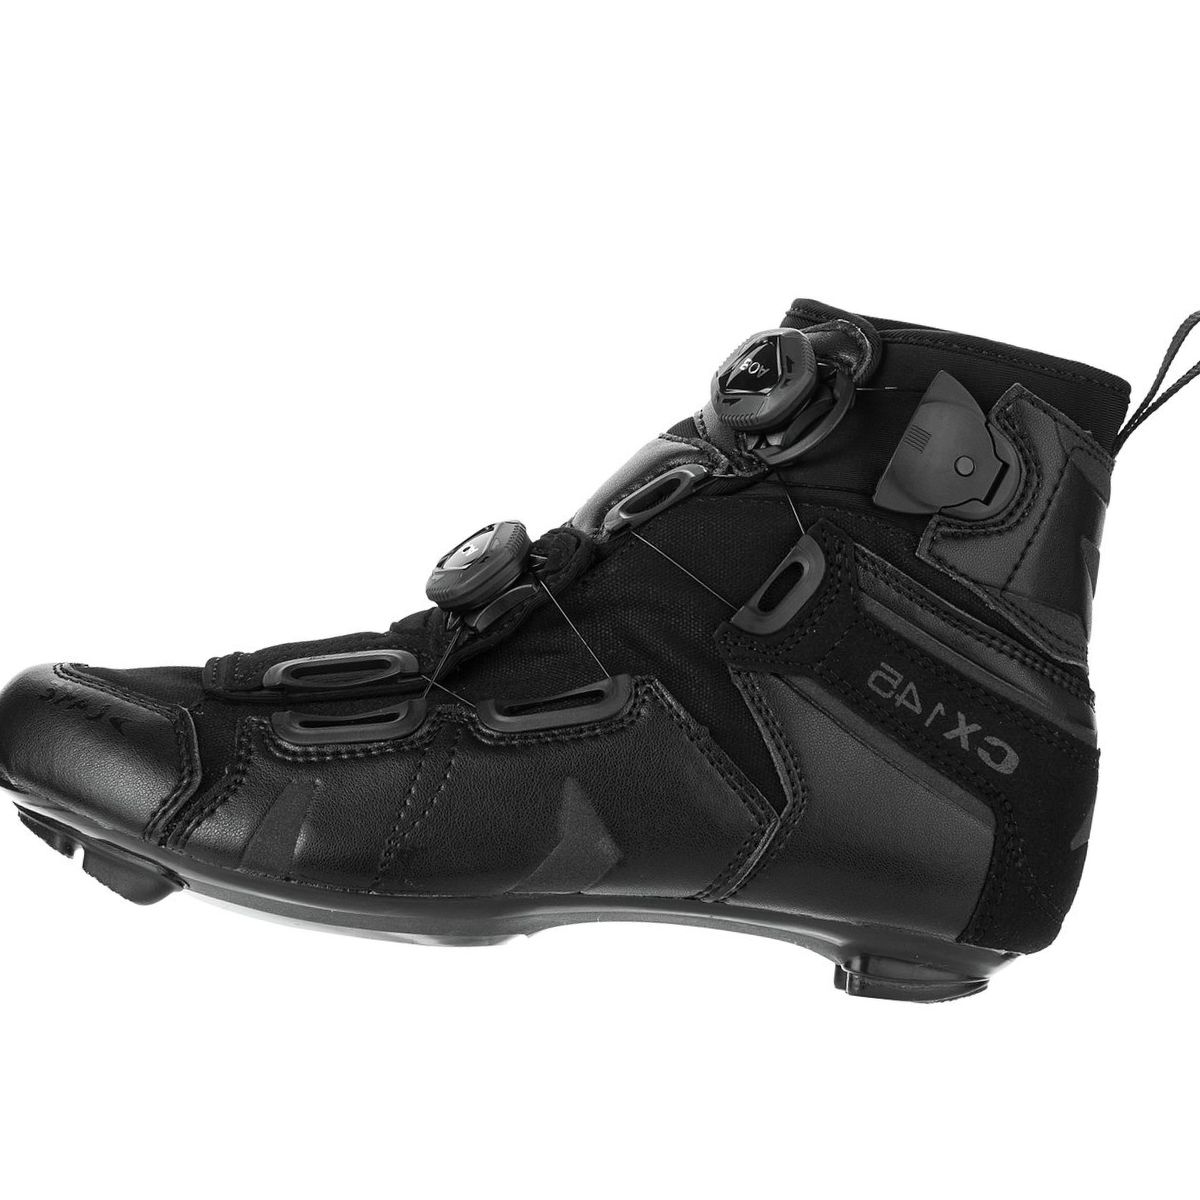 Lake CX145 Cycling Shoe - Men's